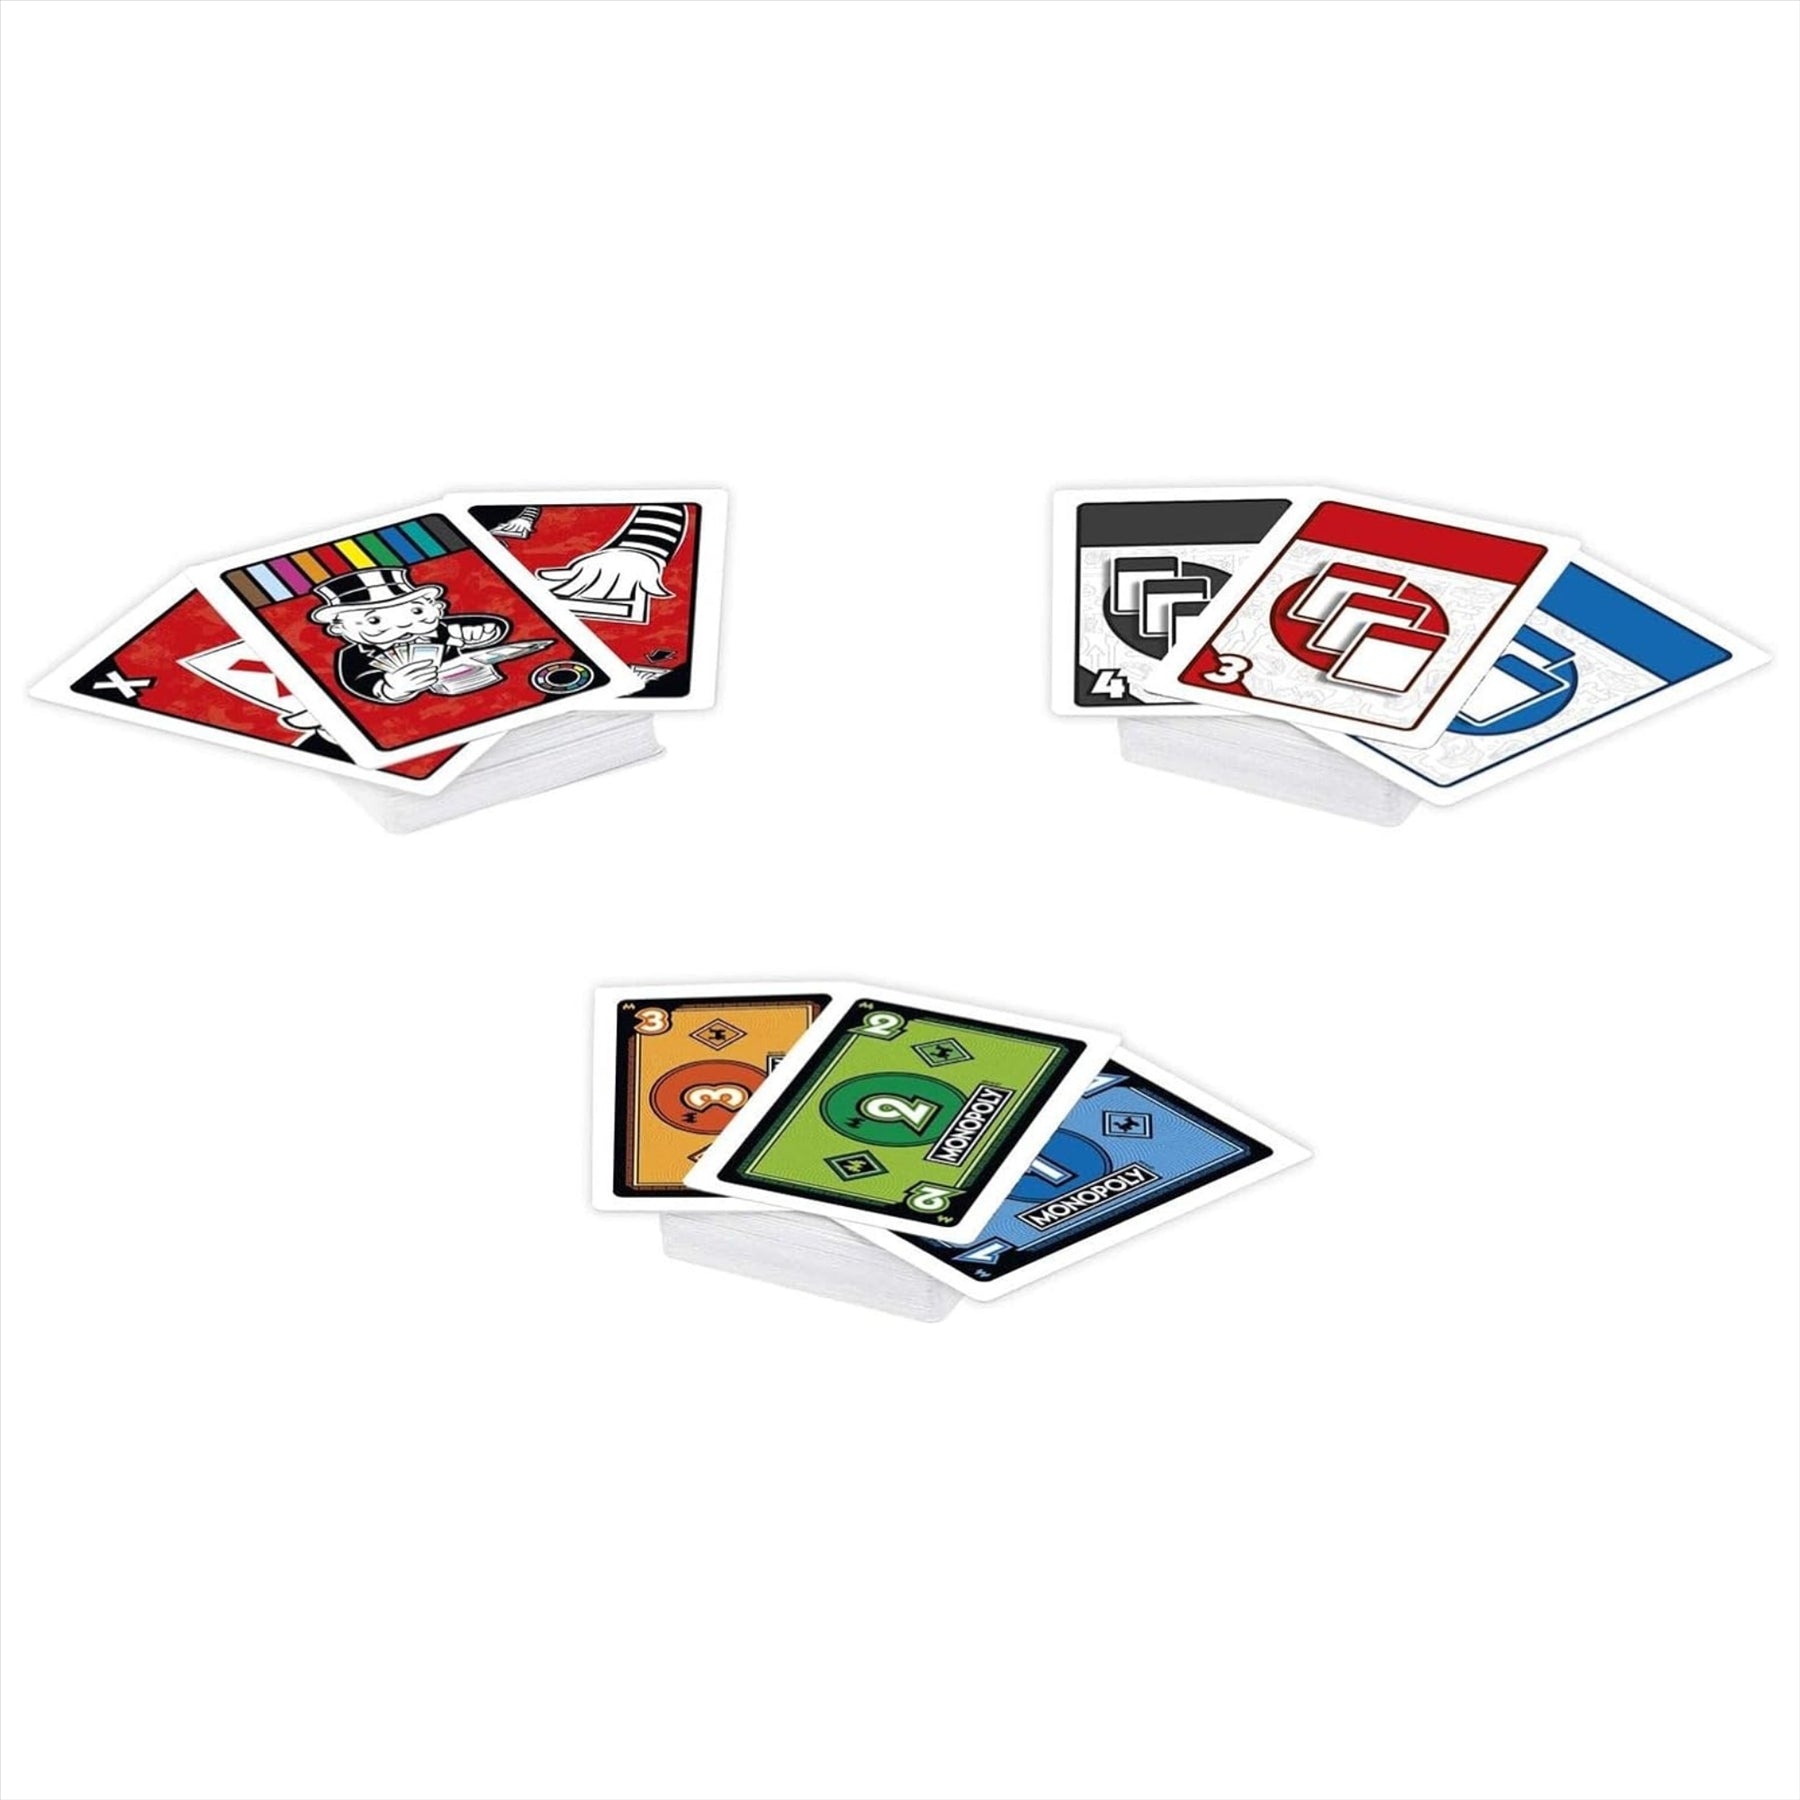 Monopoly Bid Card Game - Buy, Trade, or Steal Properties to Win - Toptoys2u